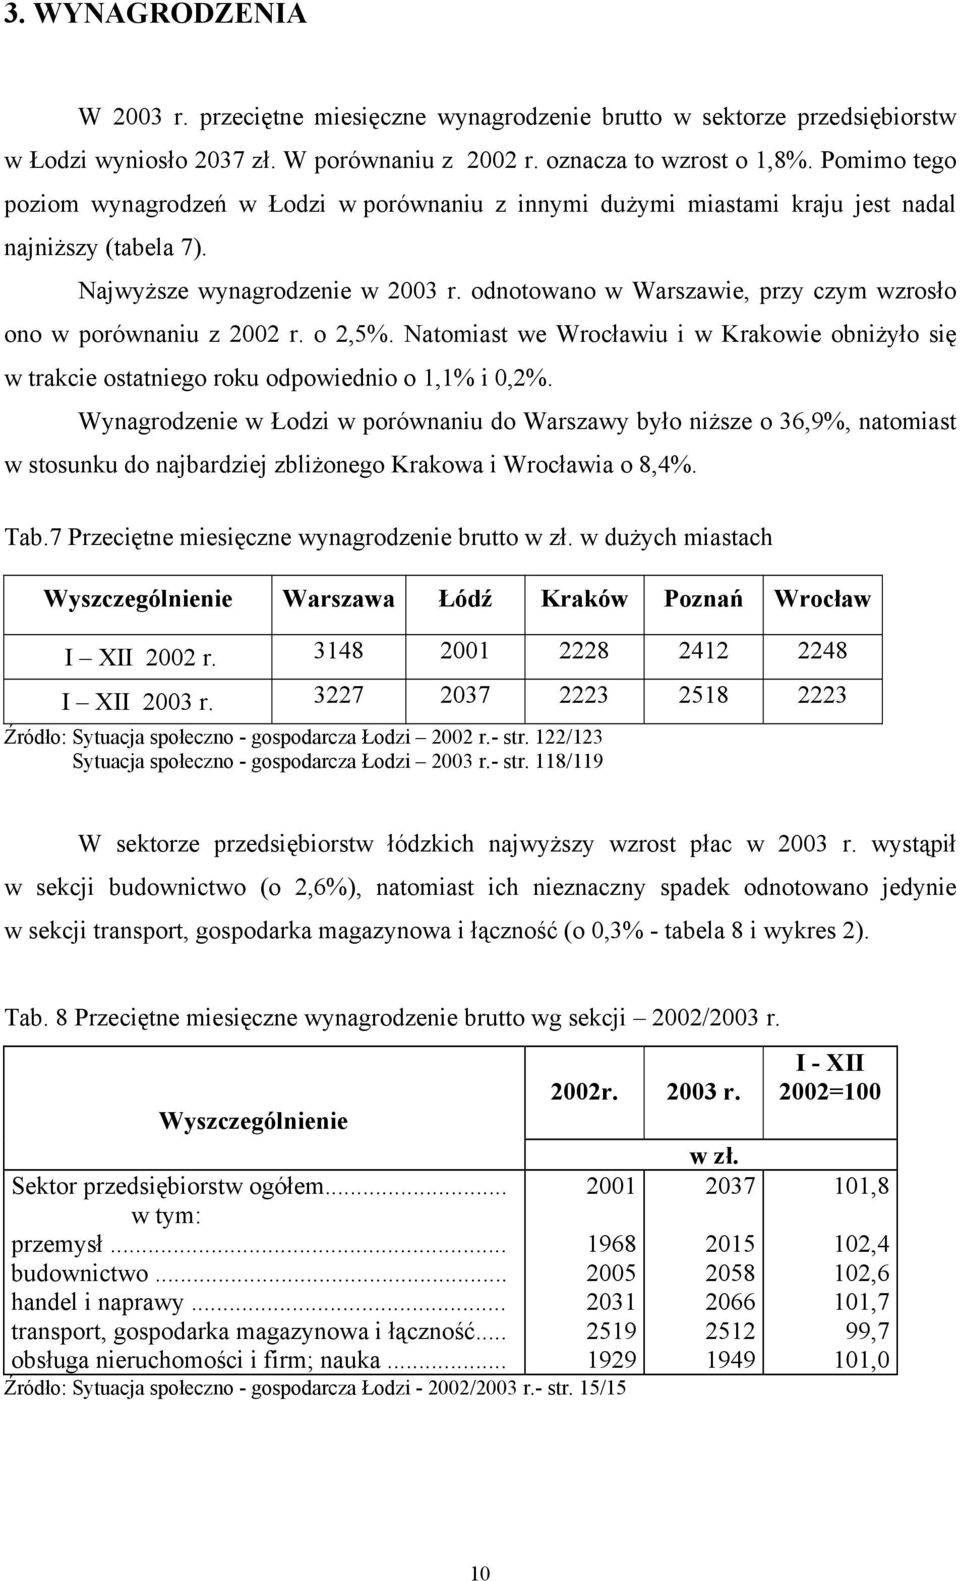 odnotowano w Warszawie, przy czym wzrosło ono w porównaniu z 2002 r. o 2,5%. Natomiast we Wrocławiu i w Krakowie obniżyło się w trakcie ostatniego roku odpowiednio o 1,1% i 0,2%.